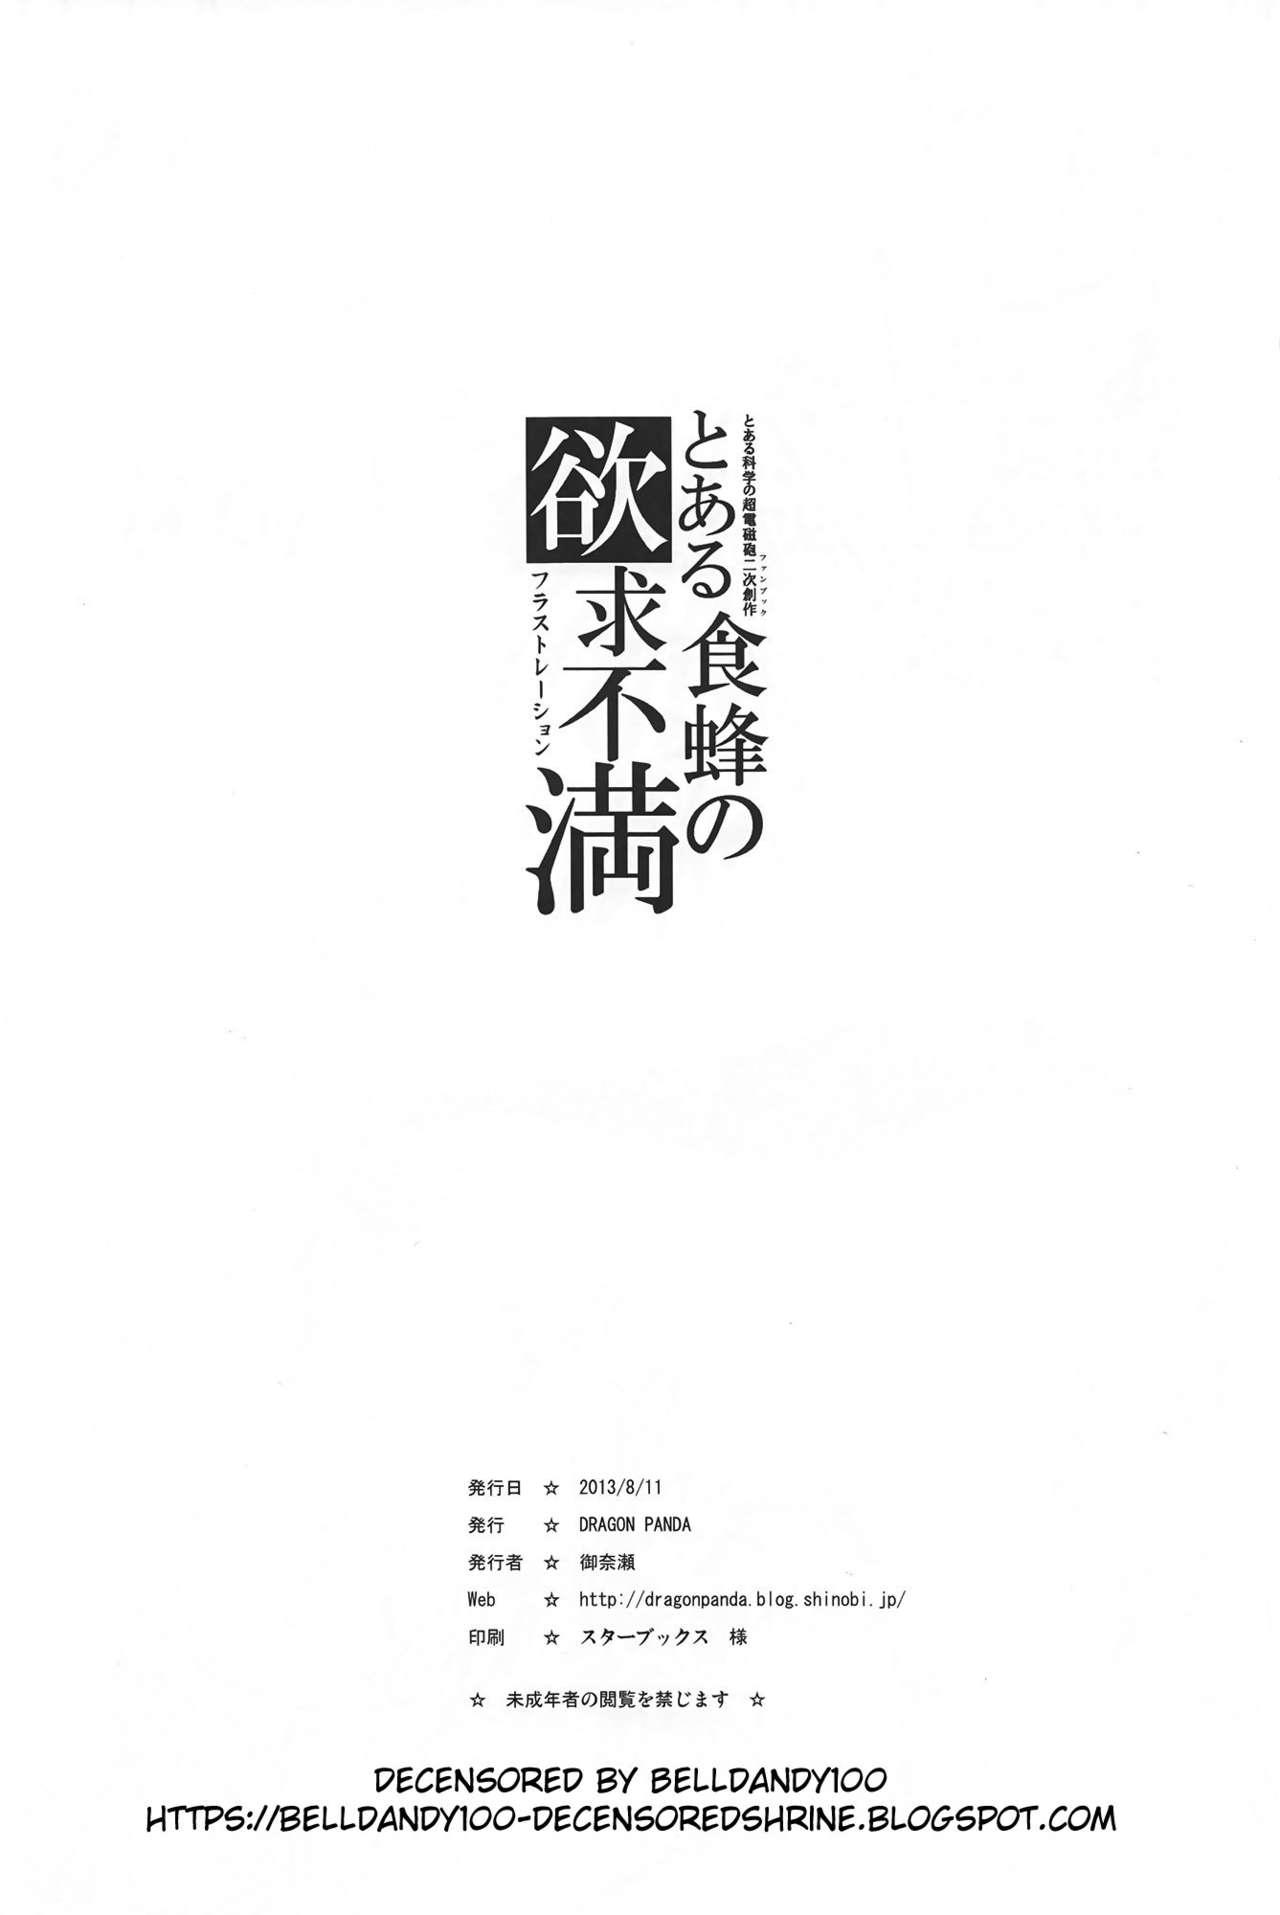 Comendo Toaru Shokuhou no Frustration - Toaru kagaku no railgun Body - Page 25